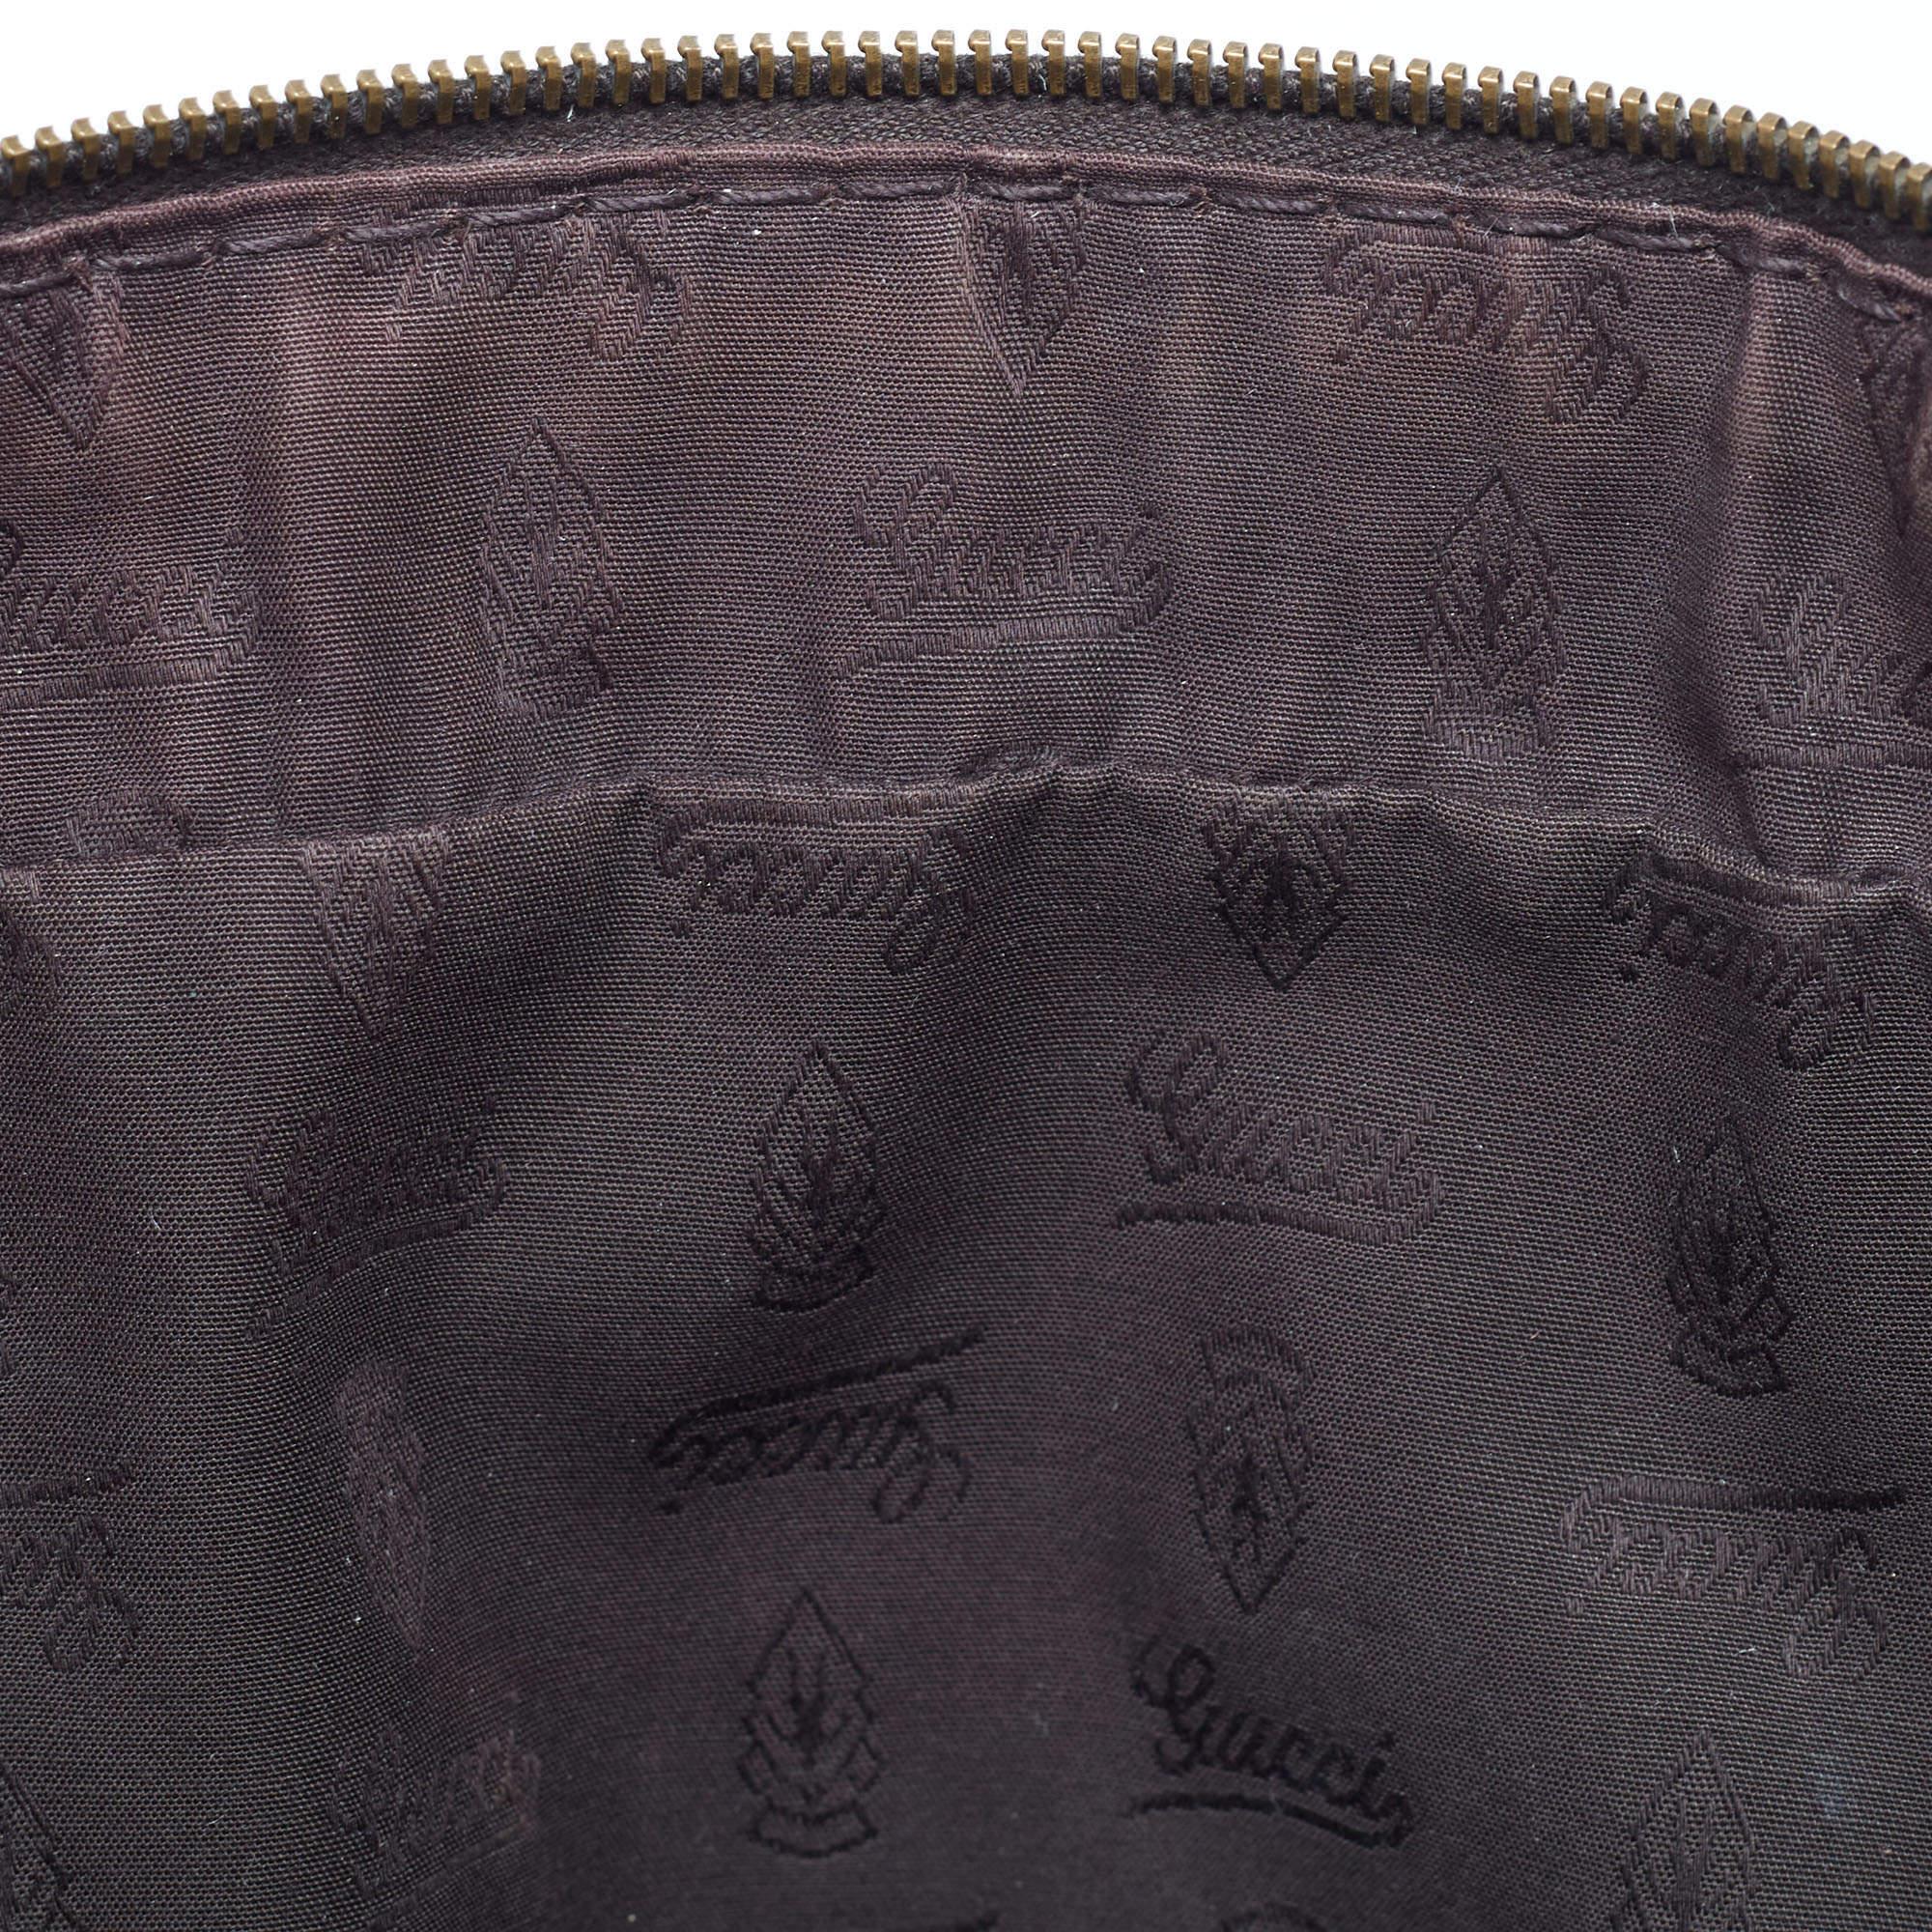 Gucci Dark Brown Guccissima Leather Jockey Boston Bag For Sale 2